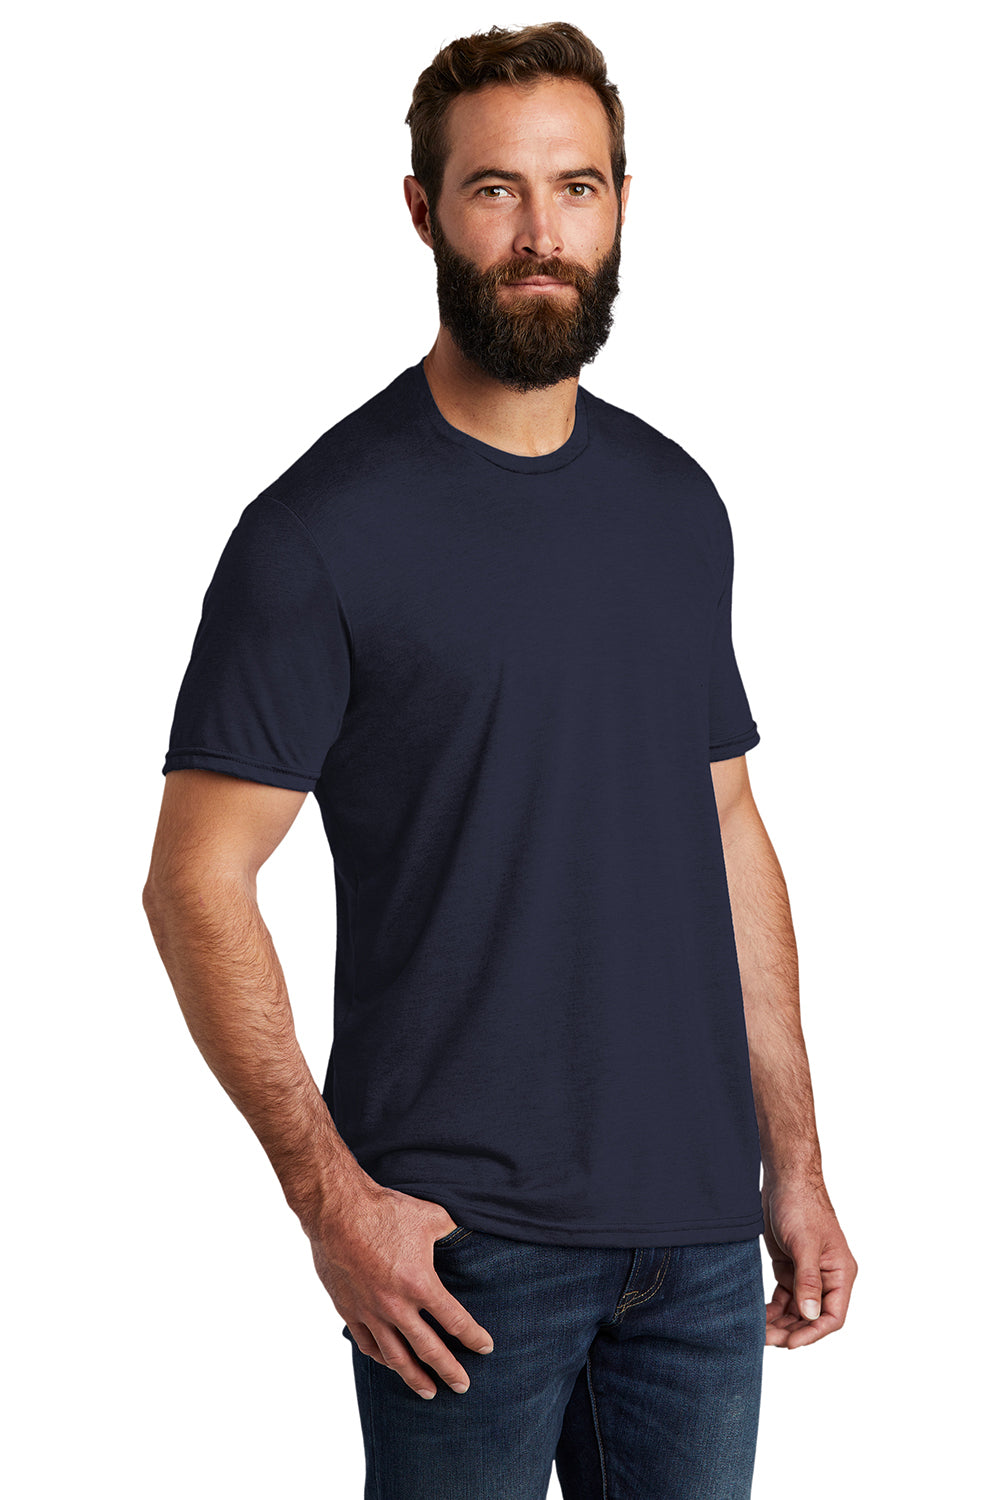 Allmade AL2004 Mens Short Sleeve Crewneck T-Shirt Night Sky Navy Blue Model 3Q